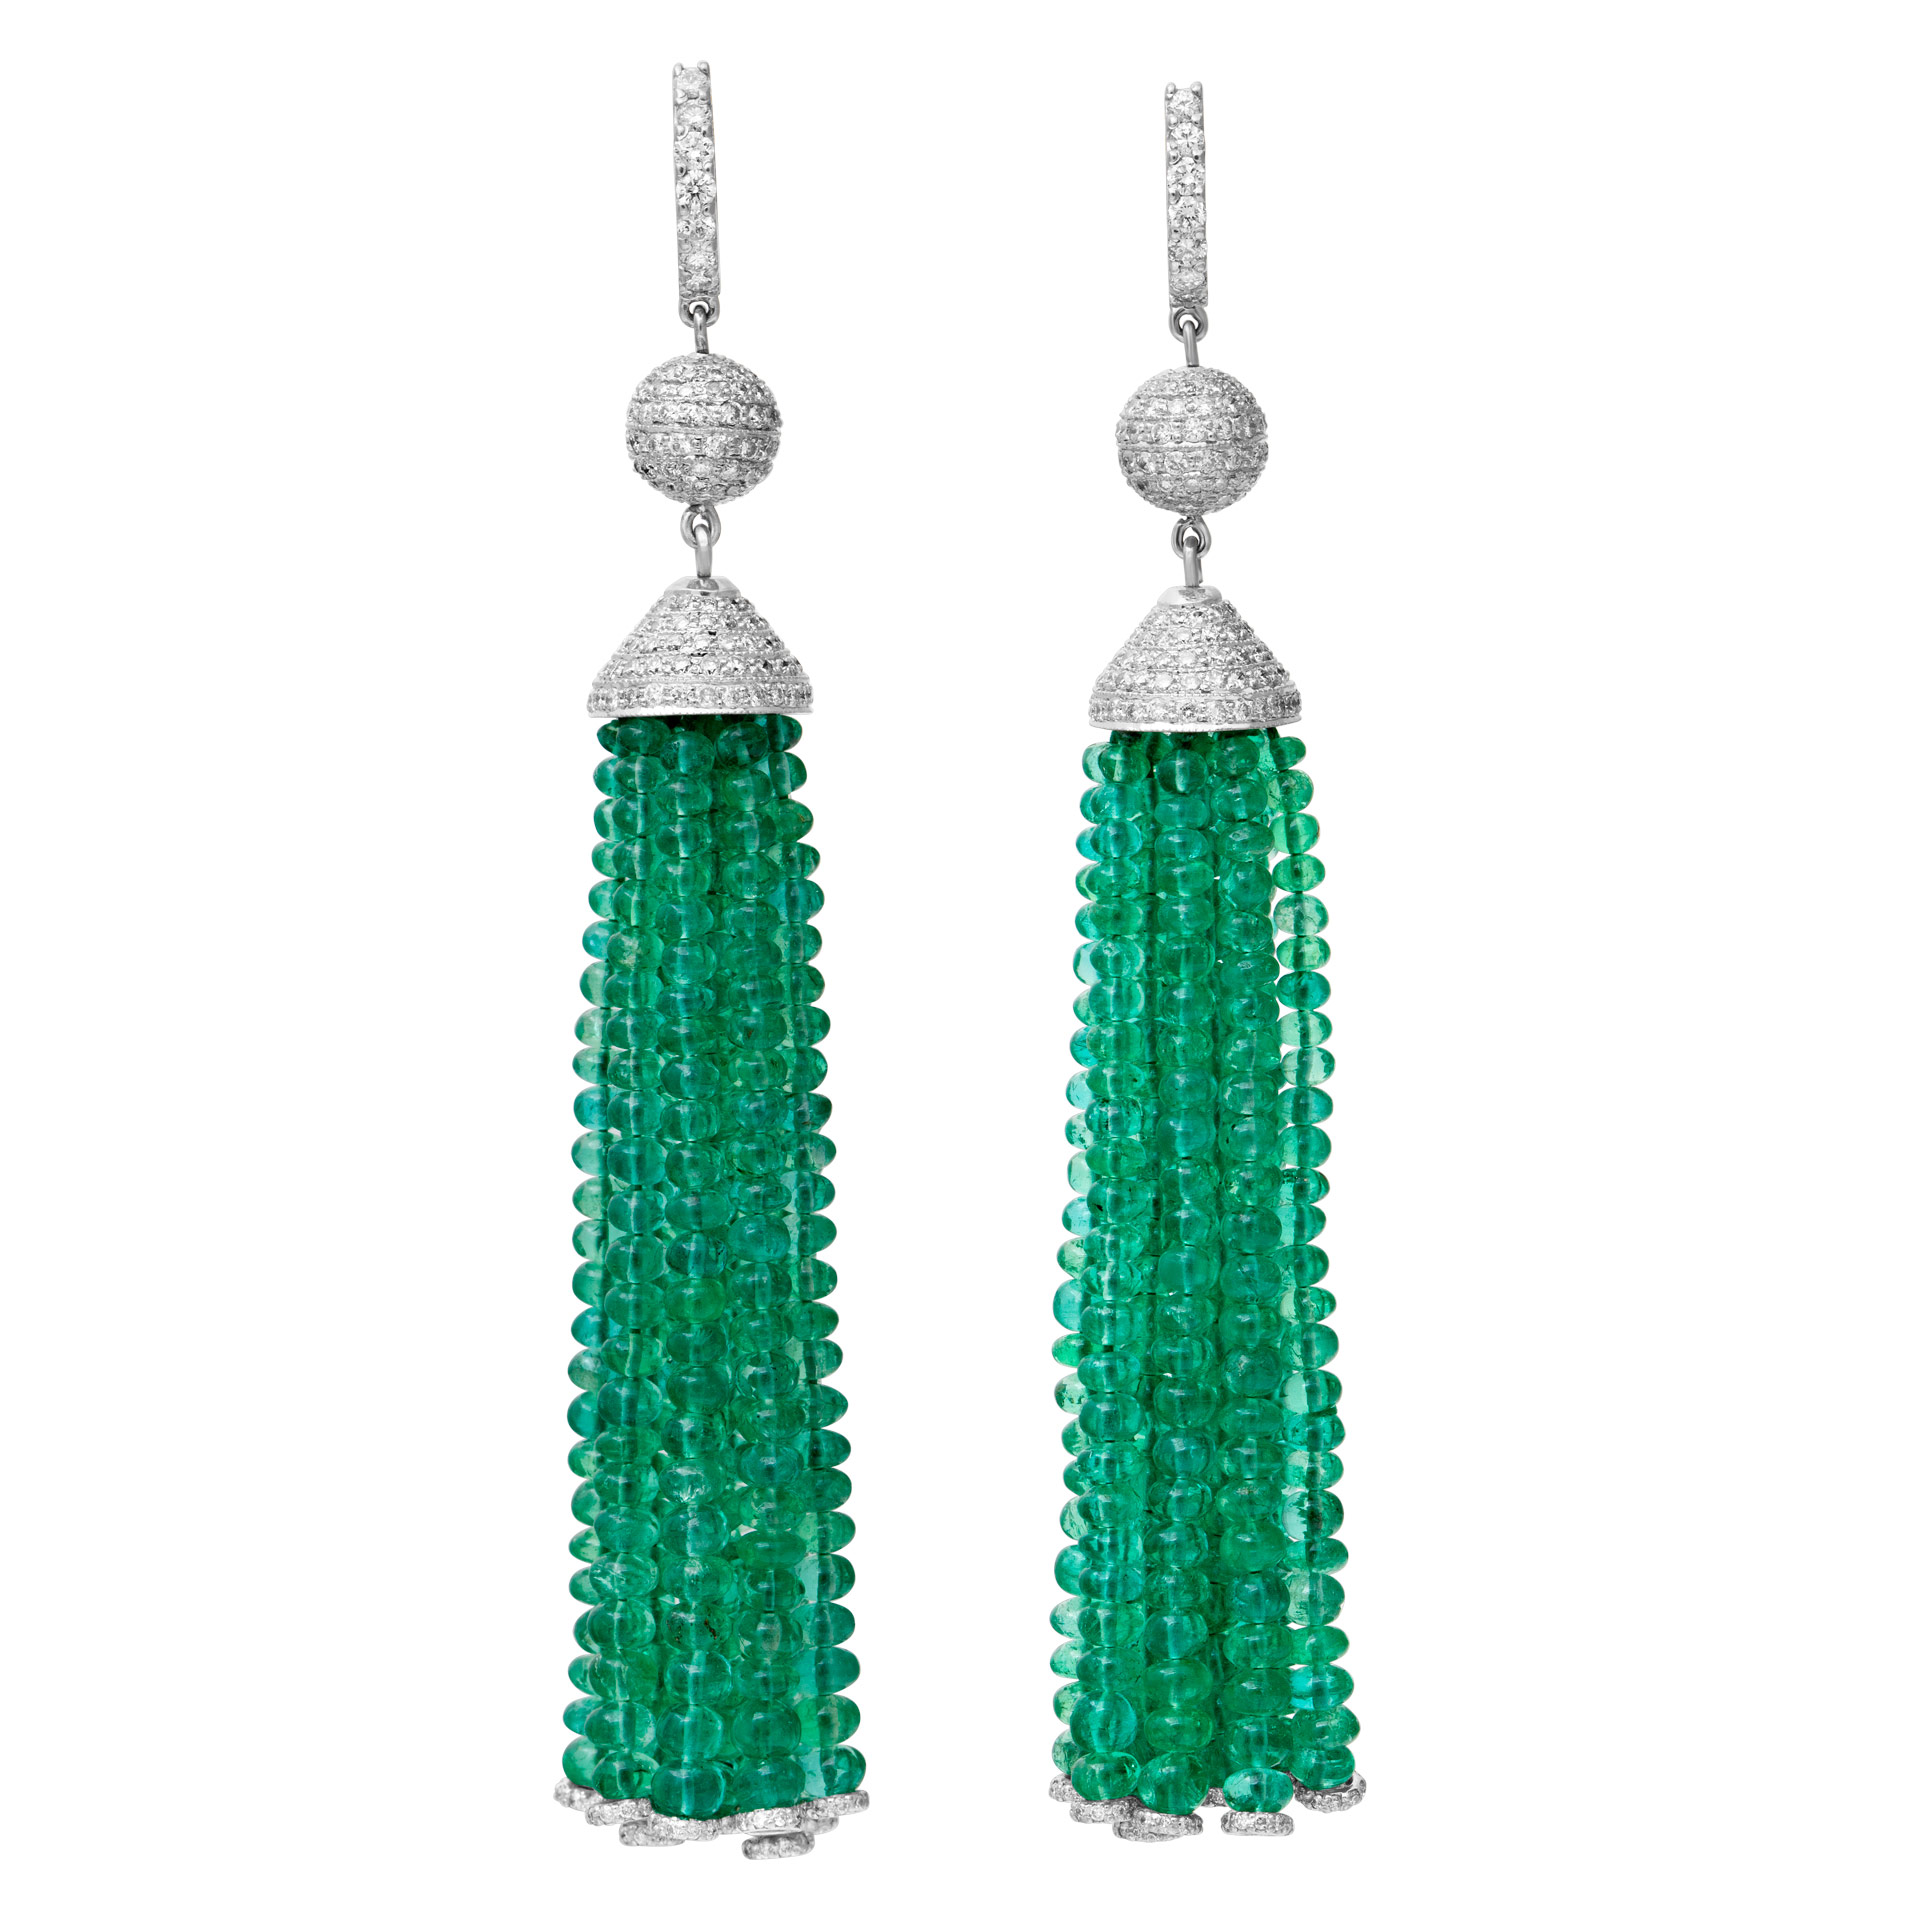 Fabulous 18k white gold emerald tassel drop earrings with diamonds